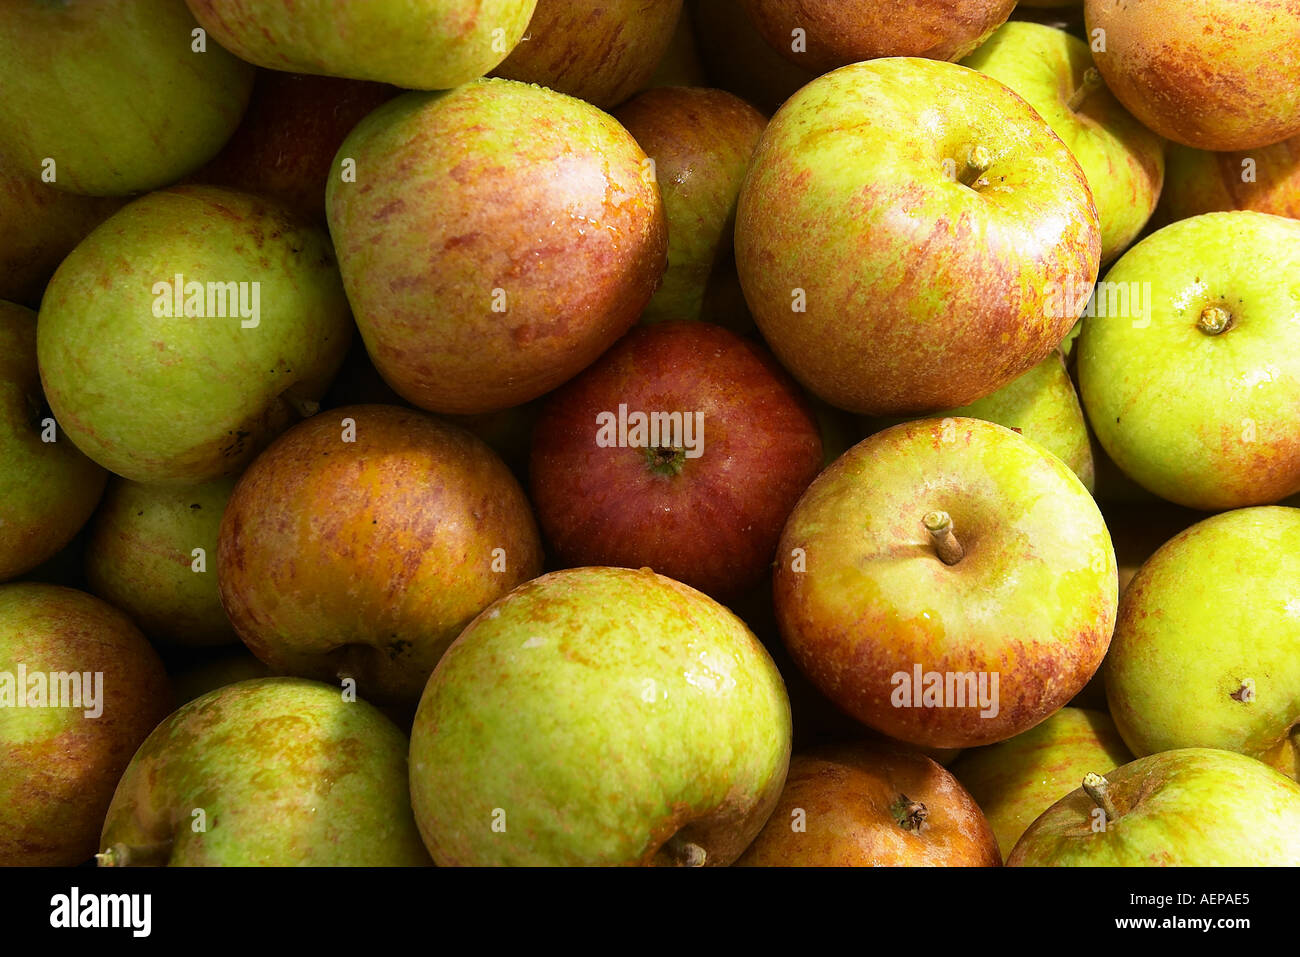 Apple picking at Chittenden farm Knoxbridge Staplehurst Kent Stock Photo